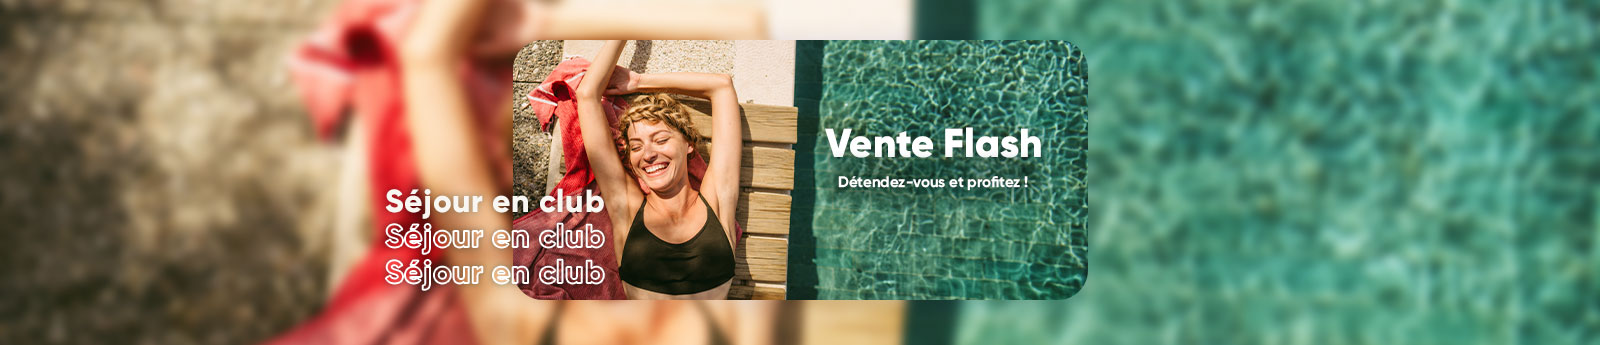 Ventes flash Voyages : des offres exclusives, des promos pour vos vacances  en France ou votre séjour à l'étranger